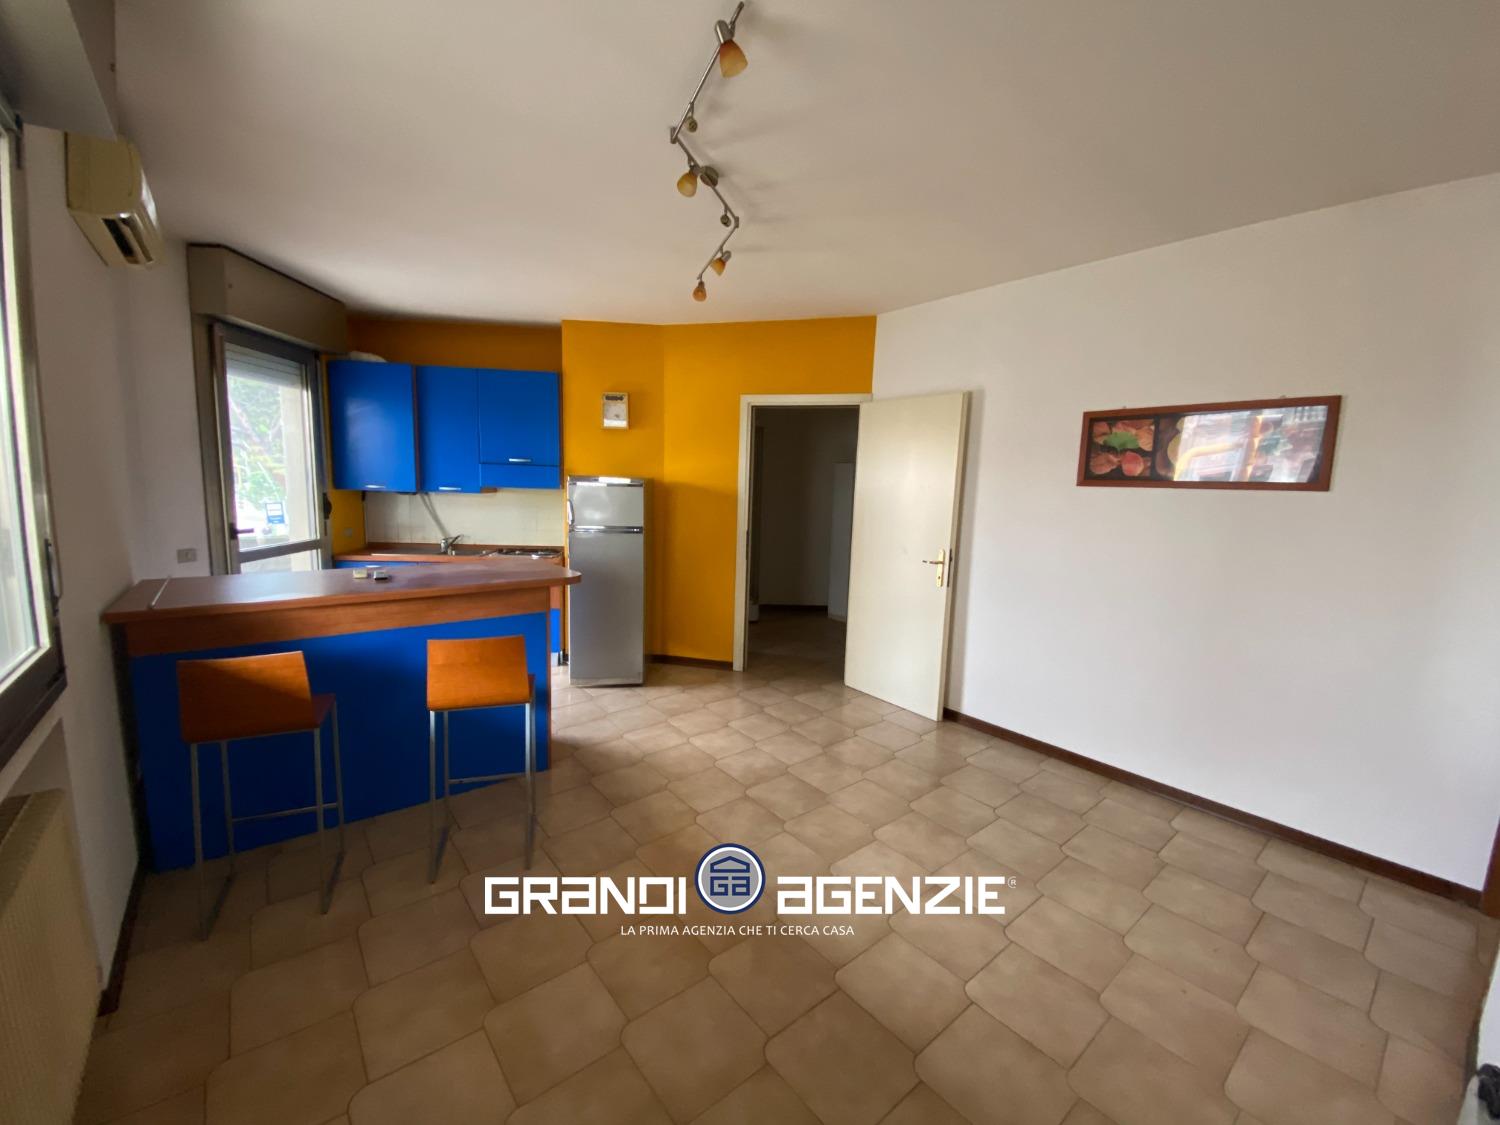 Appartamento in vendita a Spresiano, 2 locali, prezzo € 65.000 | PortaleAgenzieImmobiliari.it